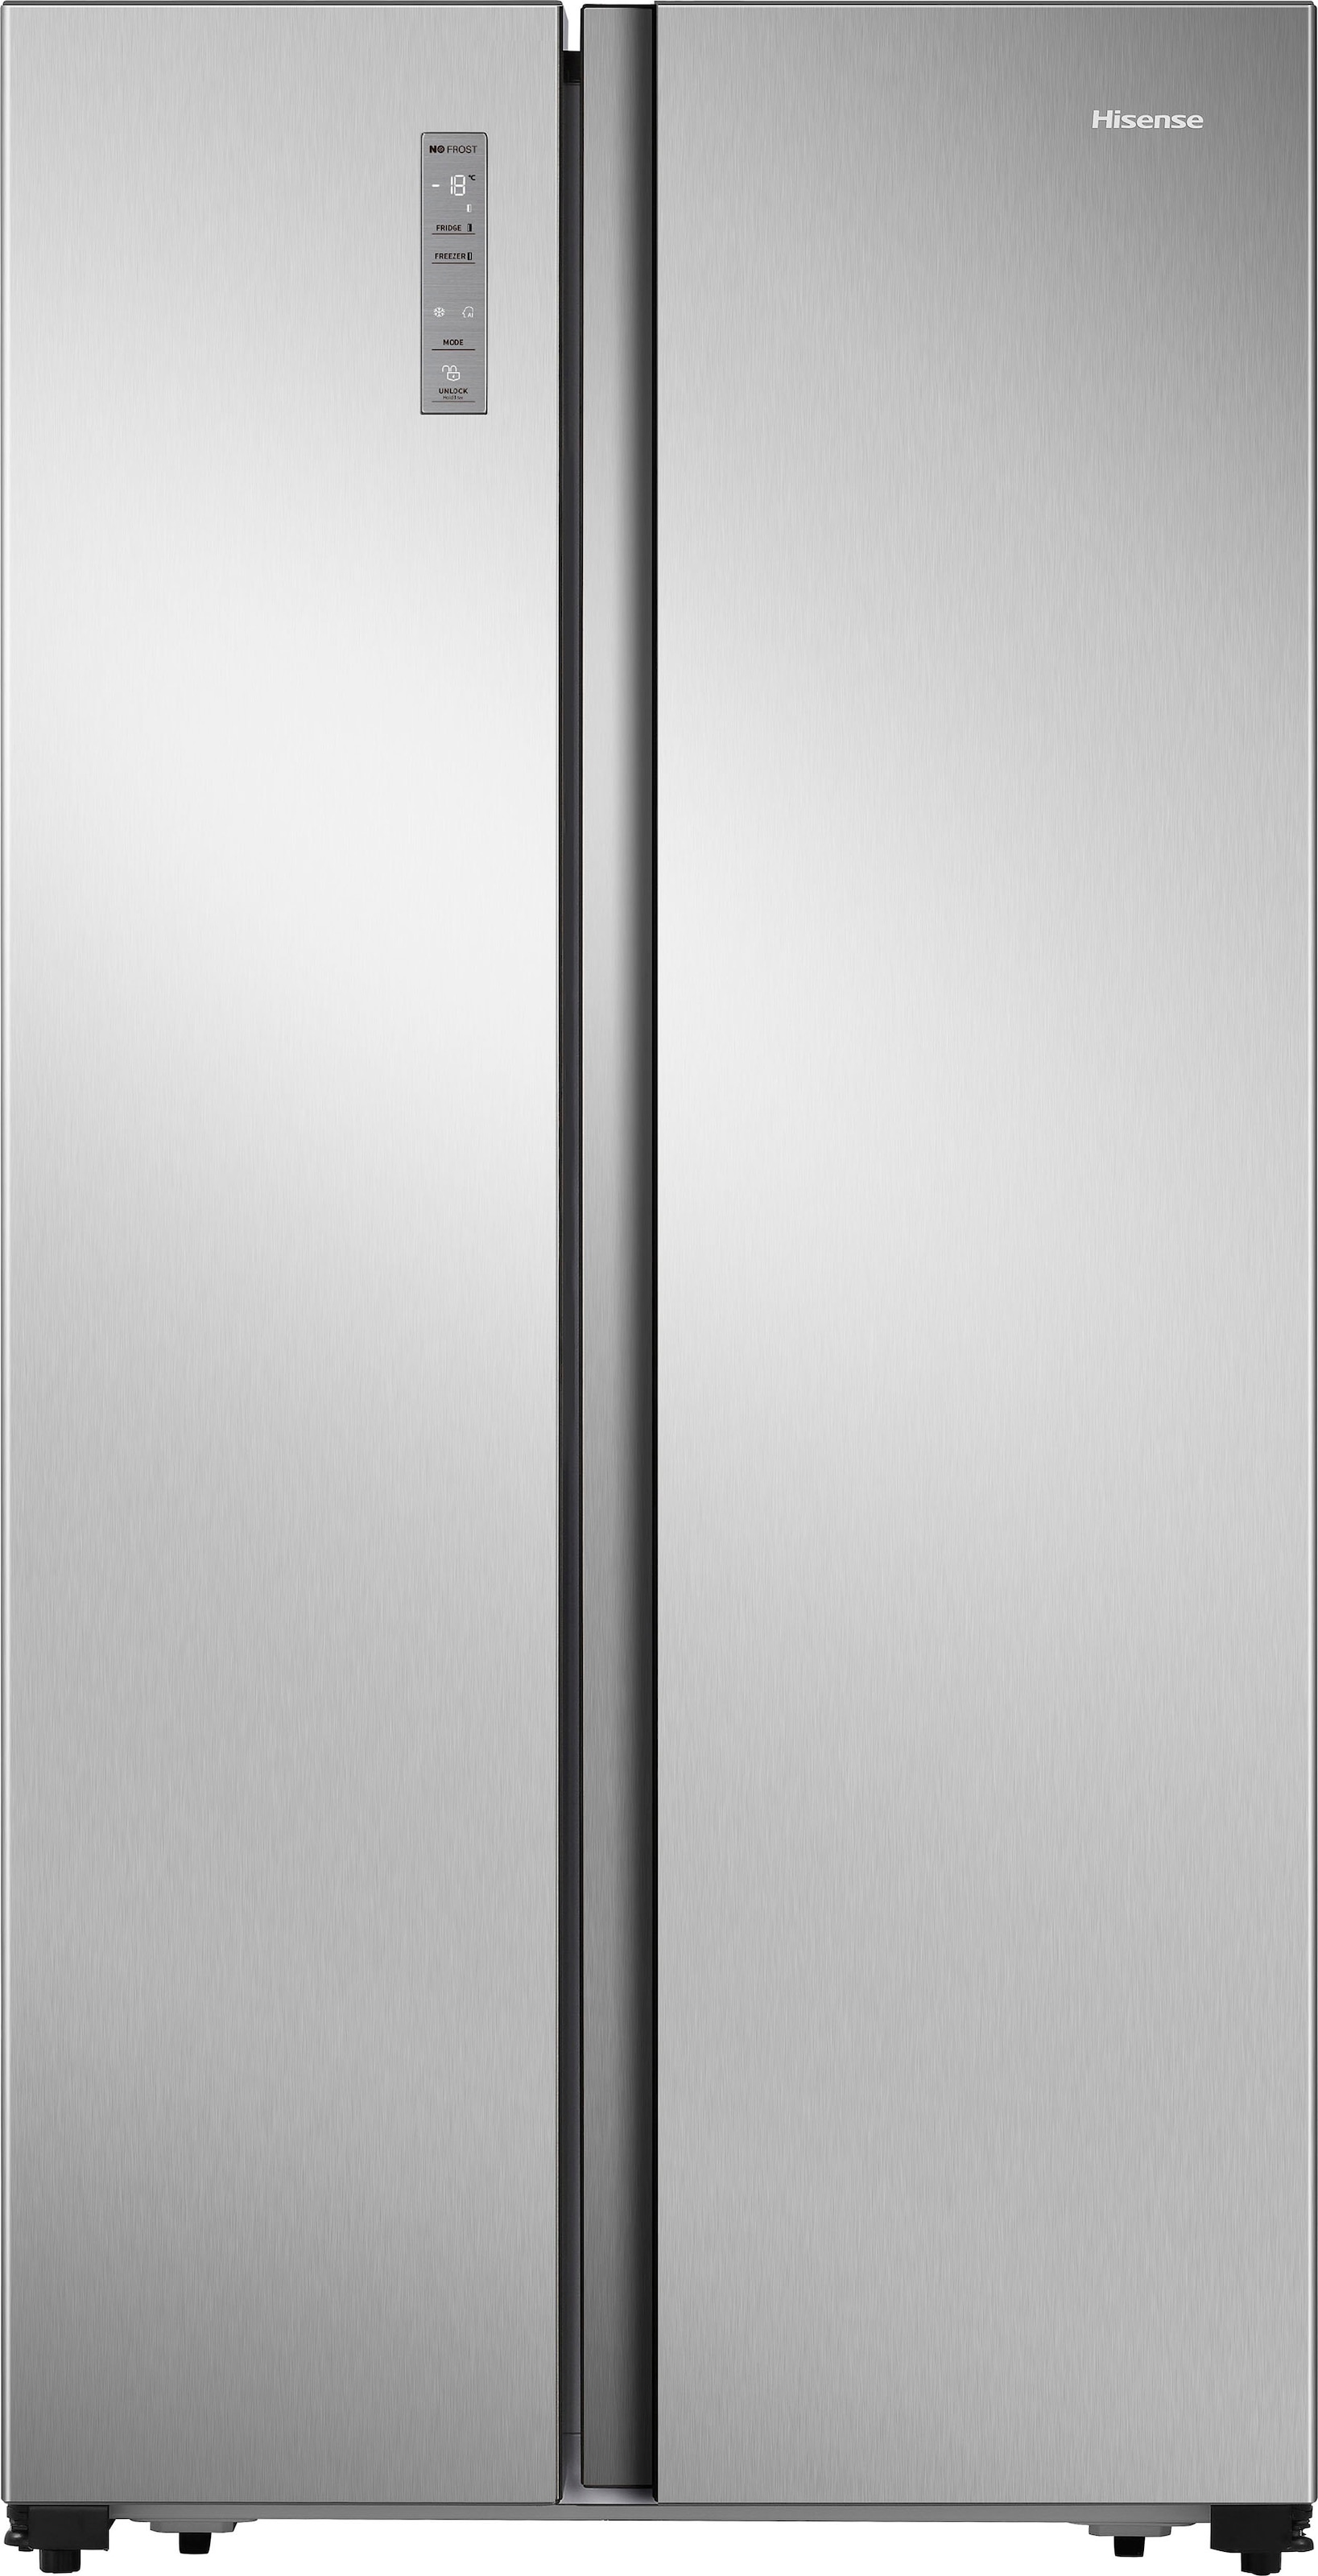 Hisense Side-by-Side »MS91518«, MS91518CC, 178,6 cm hoch, 91 cm breit, 4 Jahre Herstellergarantie